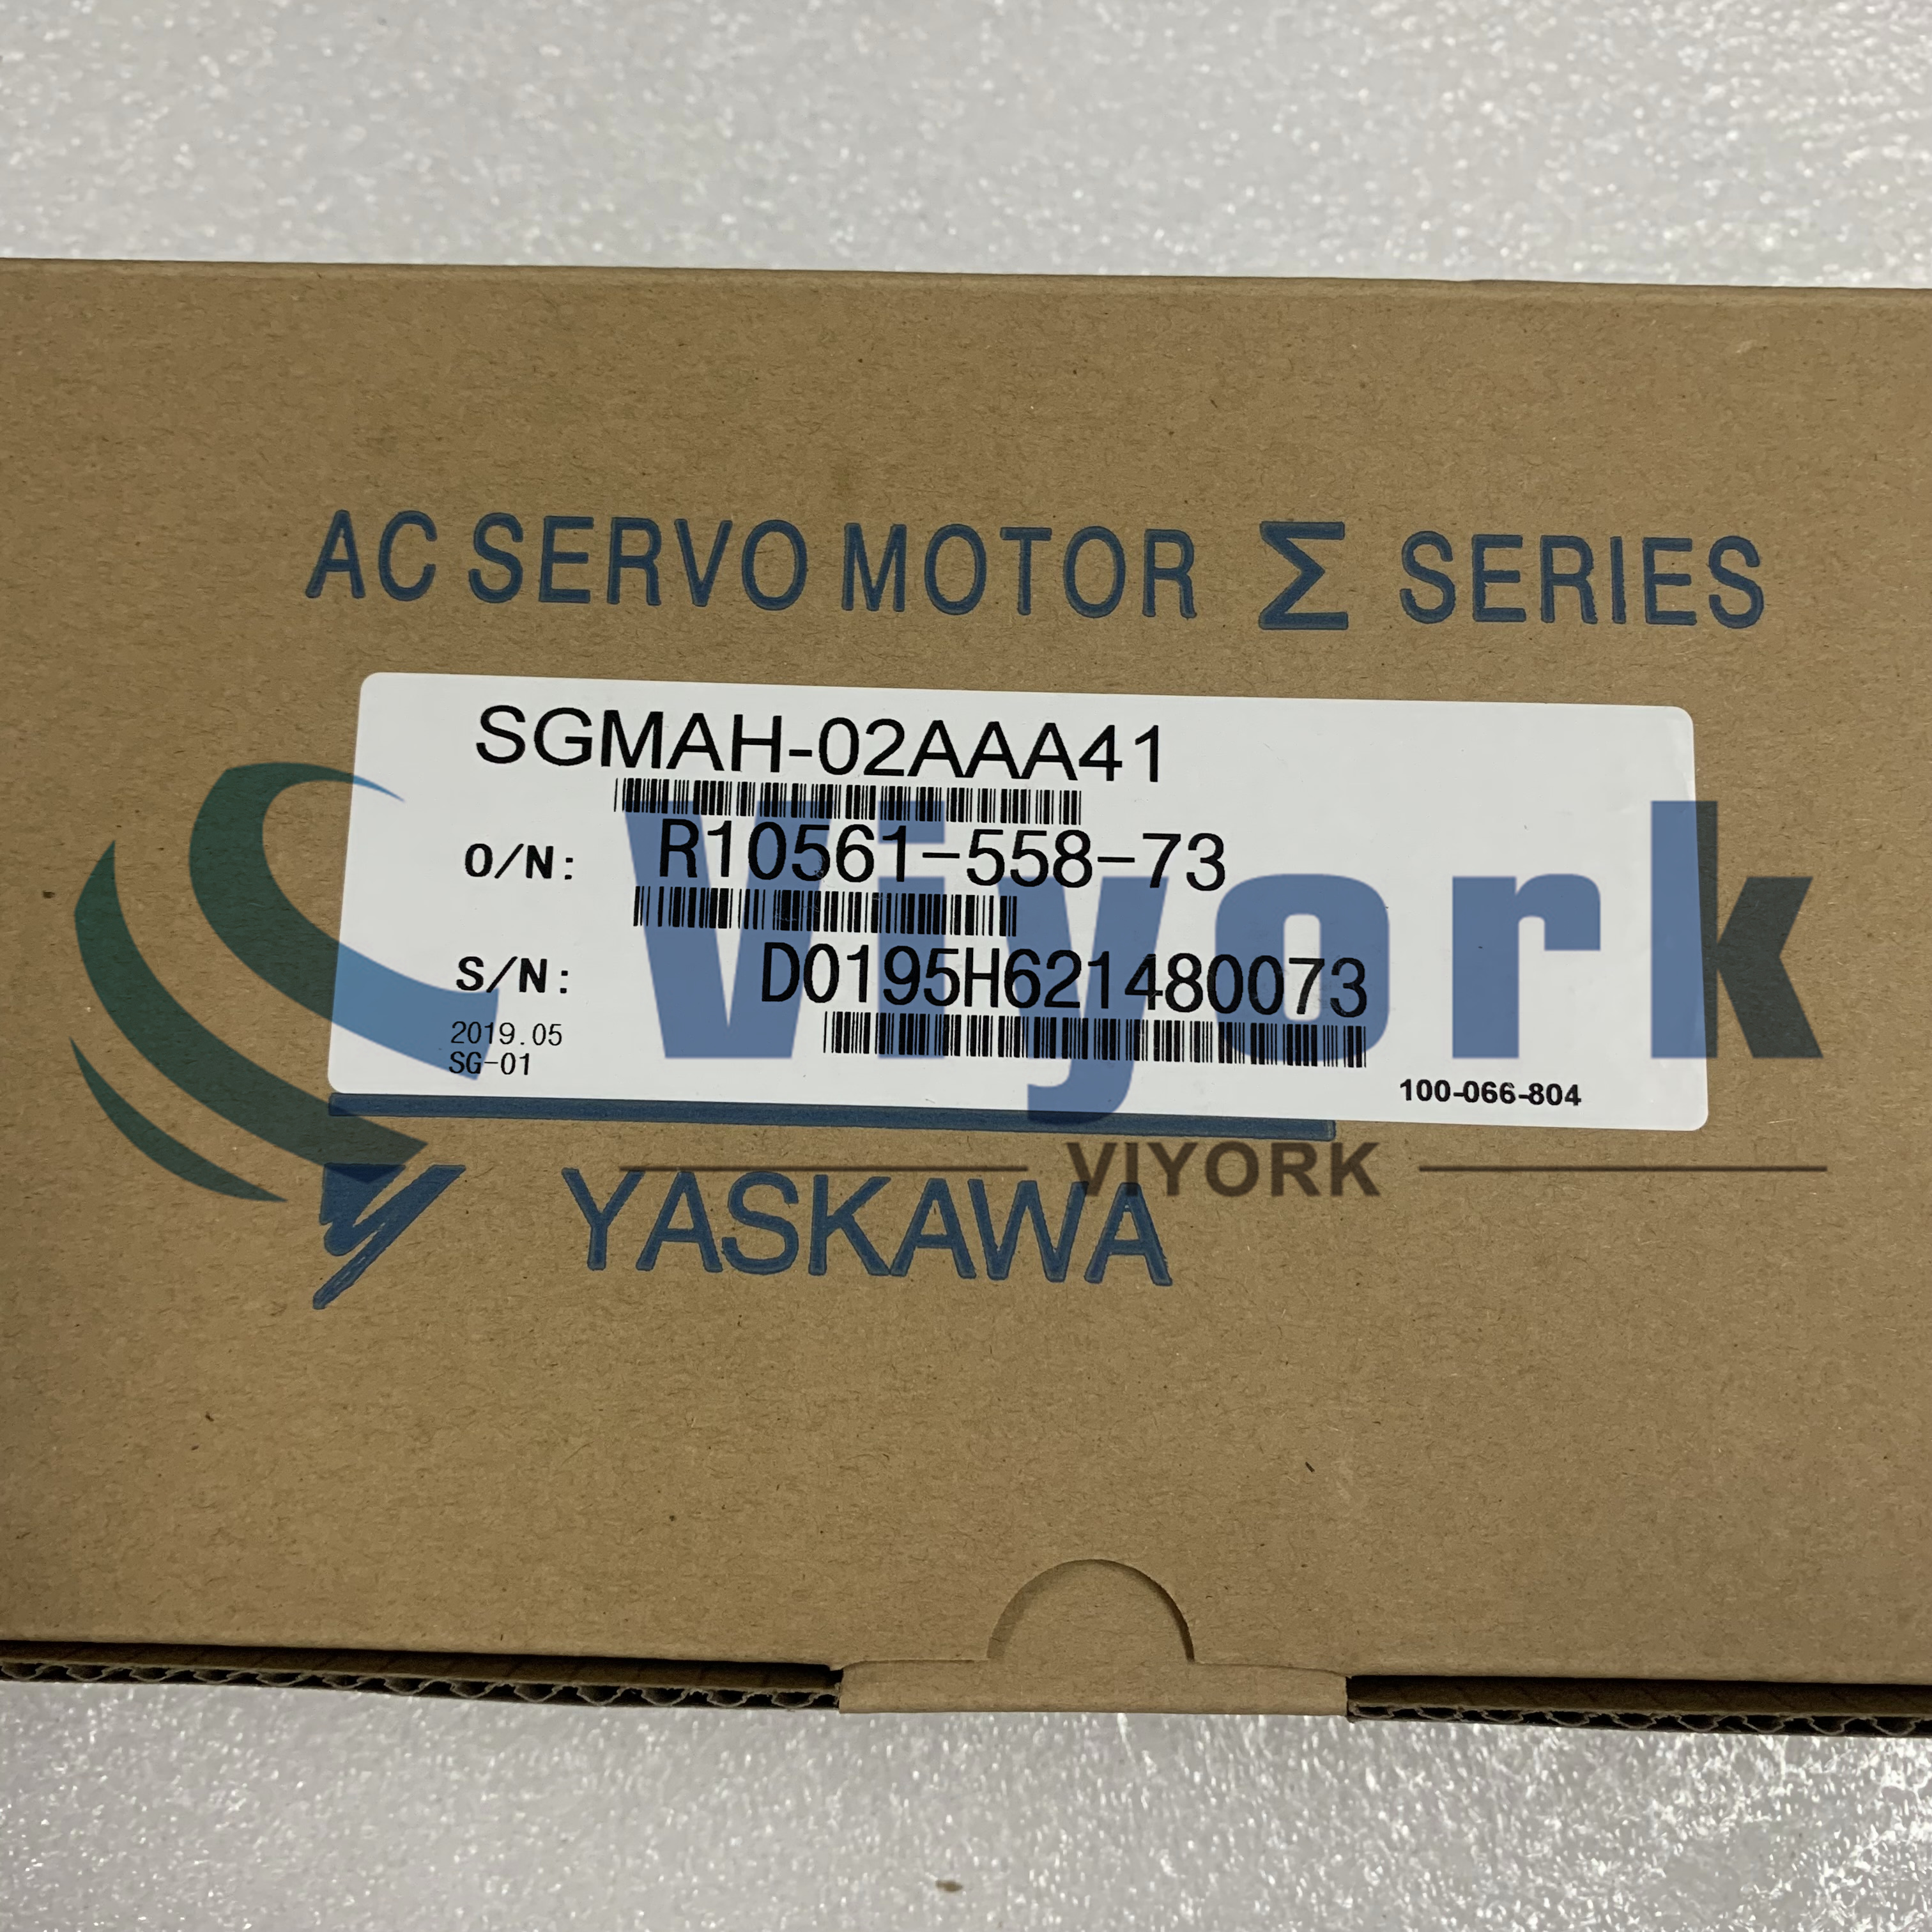 Yaskawa SGMAH-02AAA41 AC SERVO MOTOR AC 200W 200V 0.637NM 3000RPM NEW